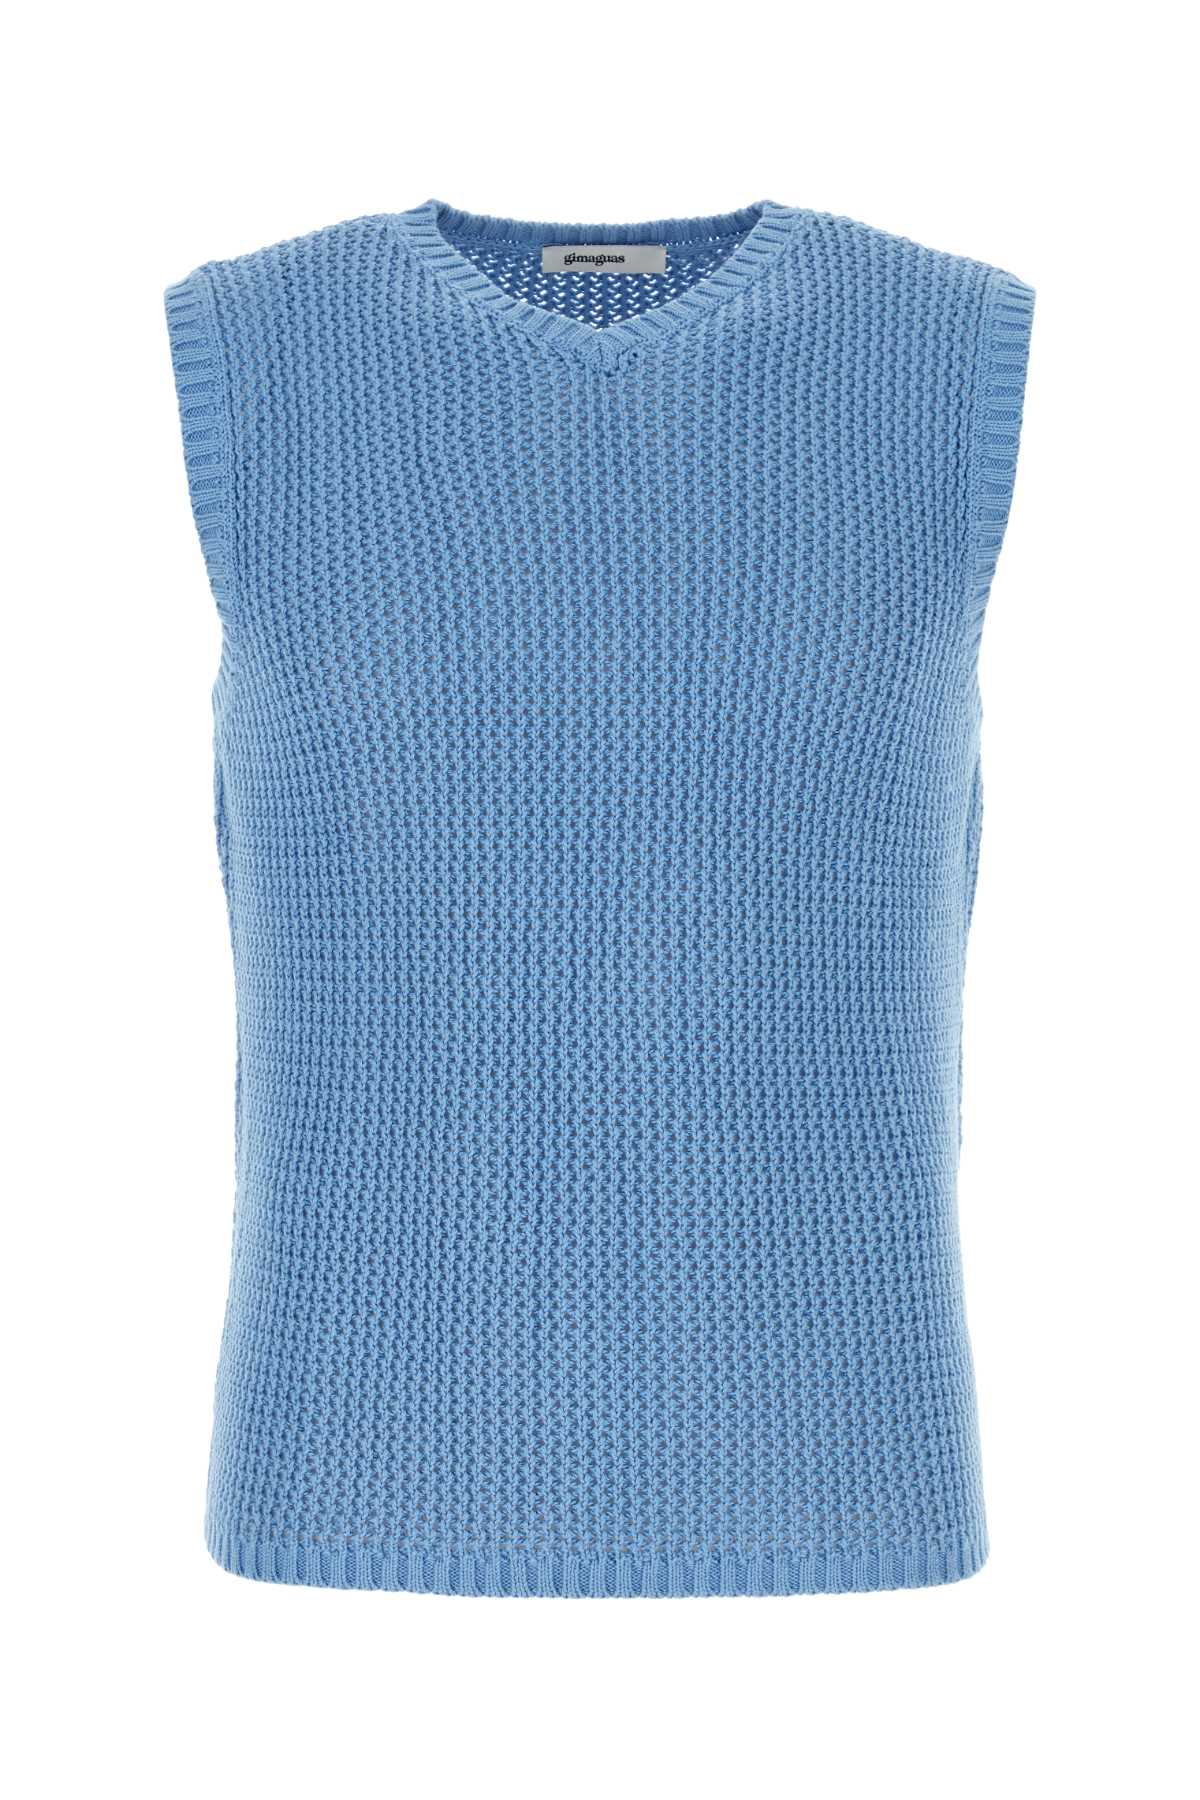 Shop Gimaguas Cerulean Blue Cotton Bridget Vest